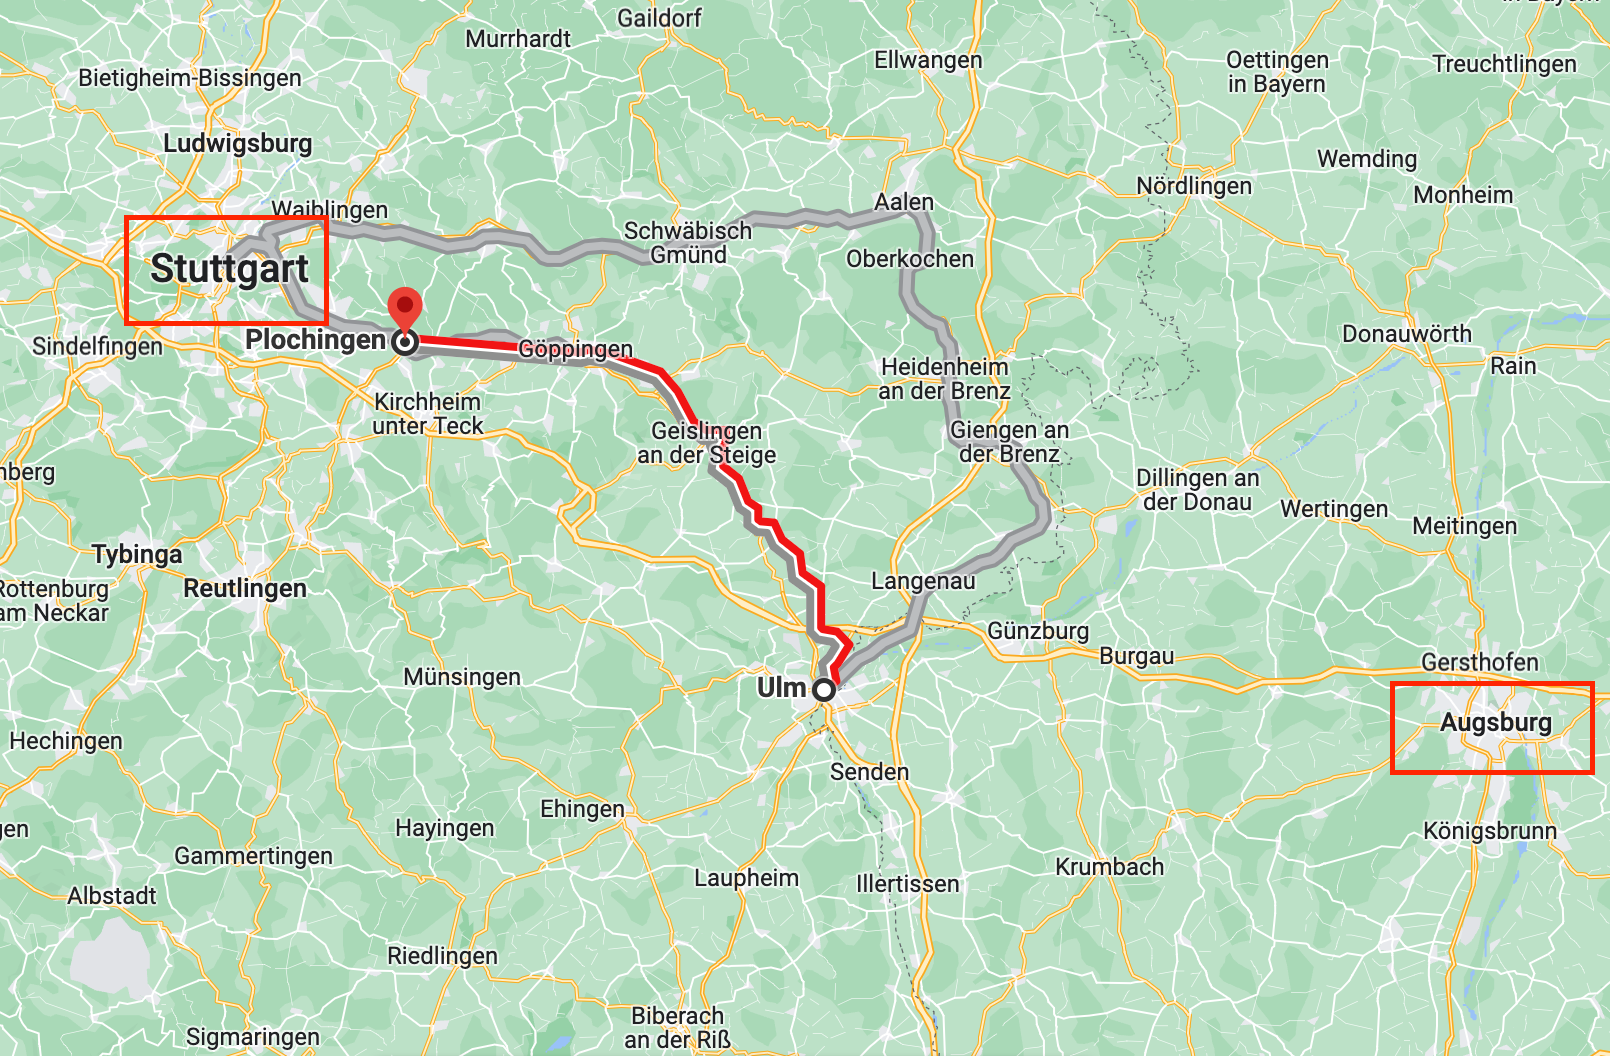 Train route from Ulm to Plochingen